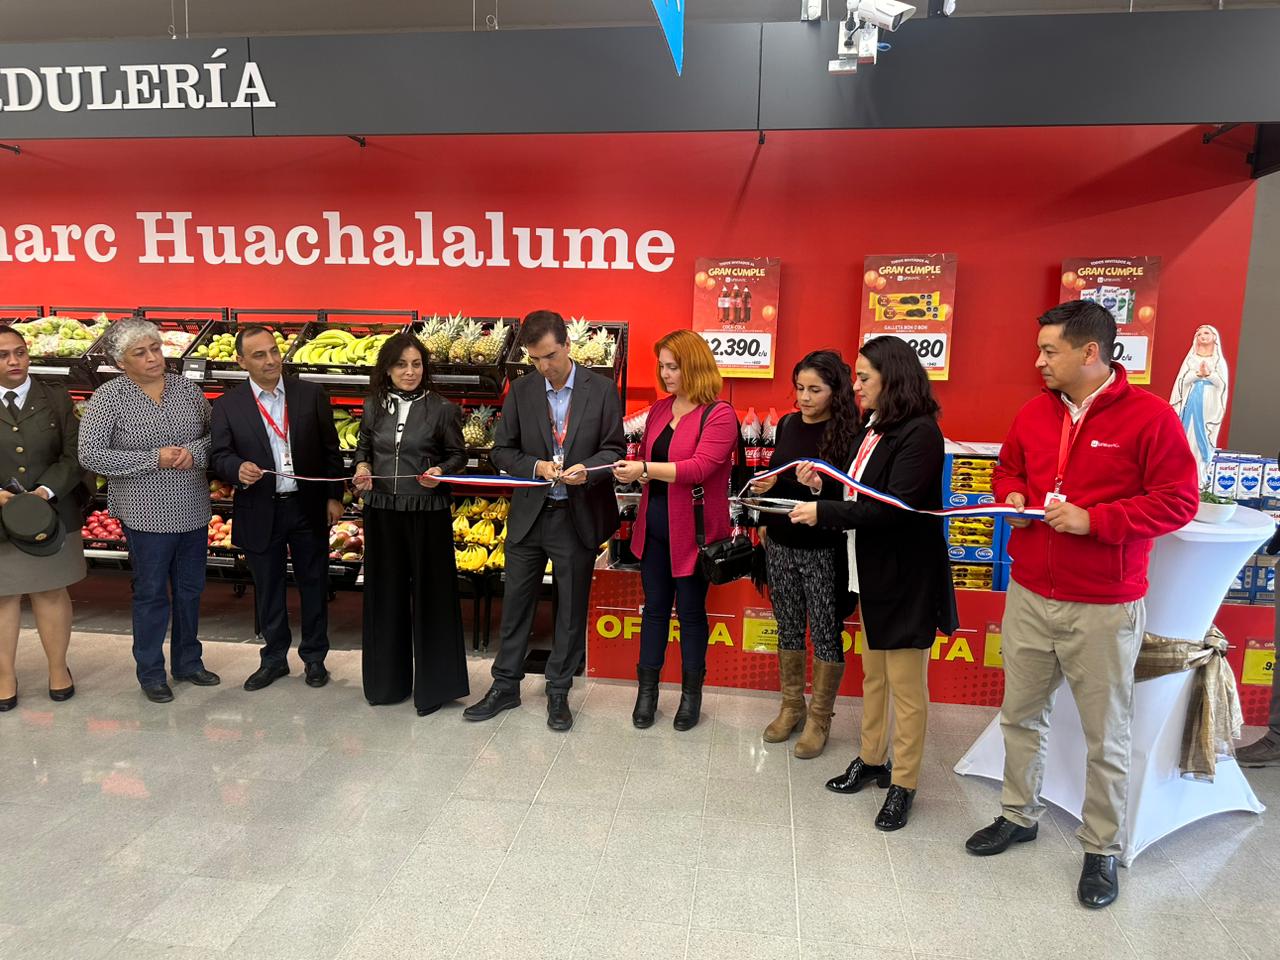 Unimarc inaugura un nuevo supermercado en la localidad de Huachalalume en la Región de Coquimbo